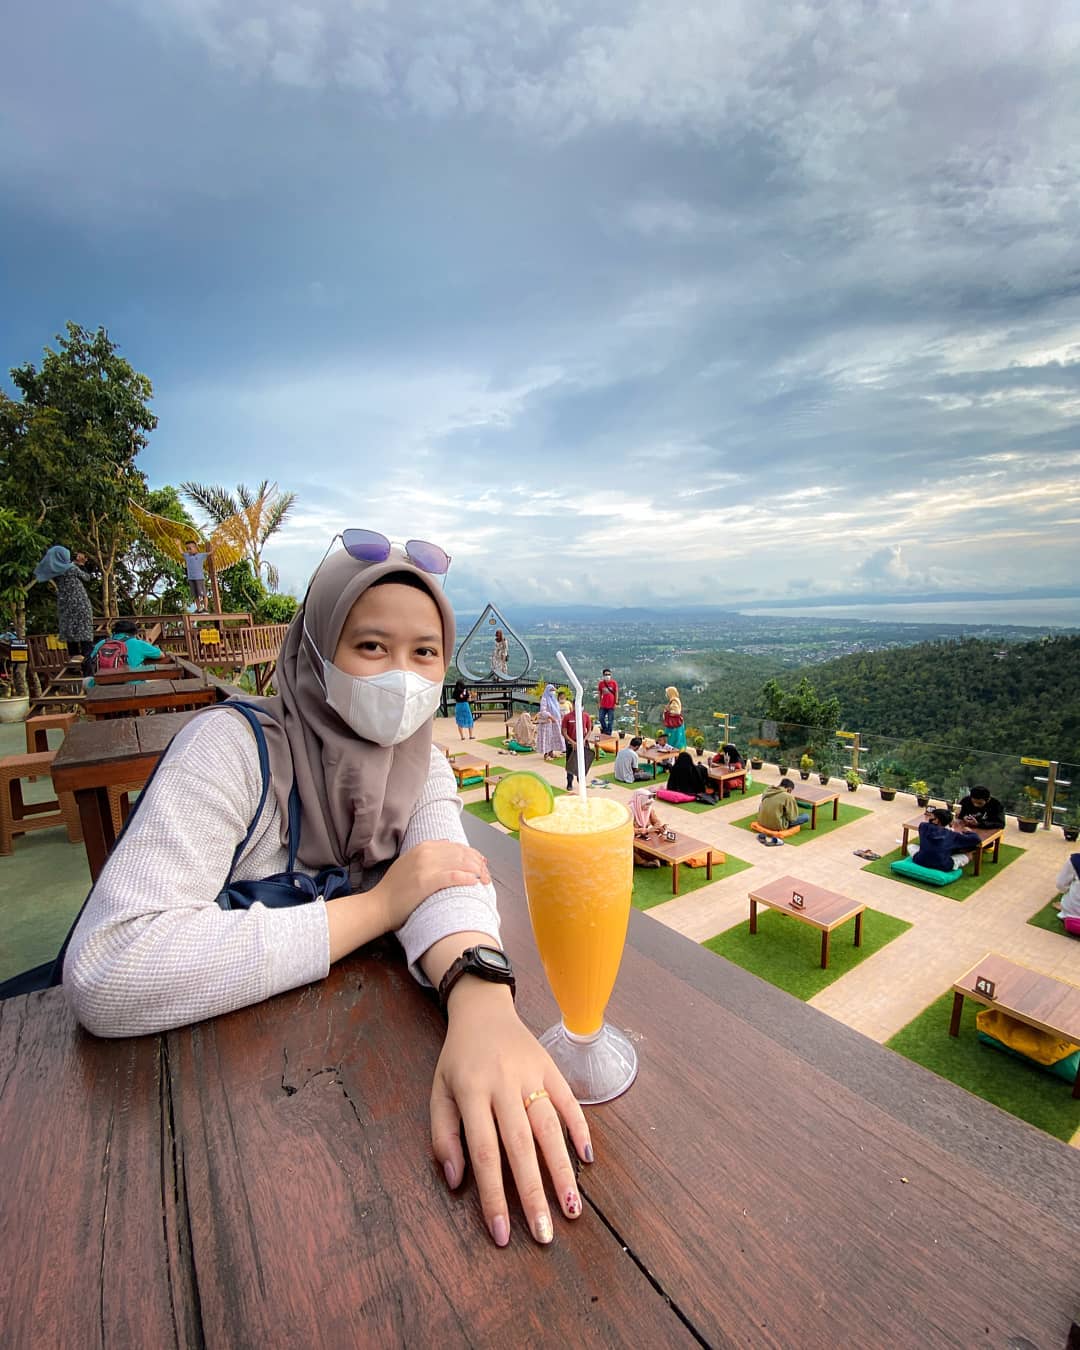 Harga Menu Taman Langit Lombok Image From @halimatusskdiah